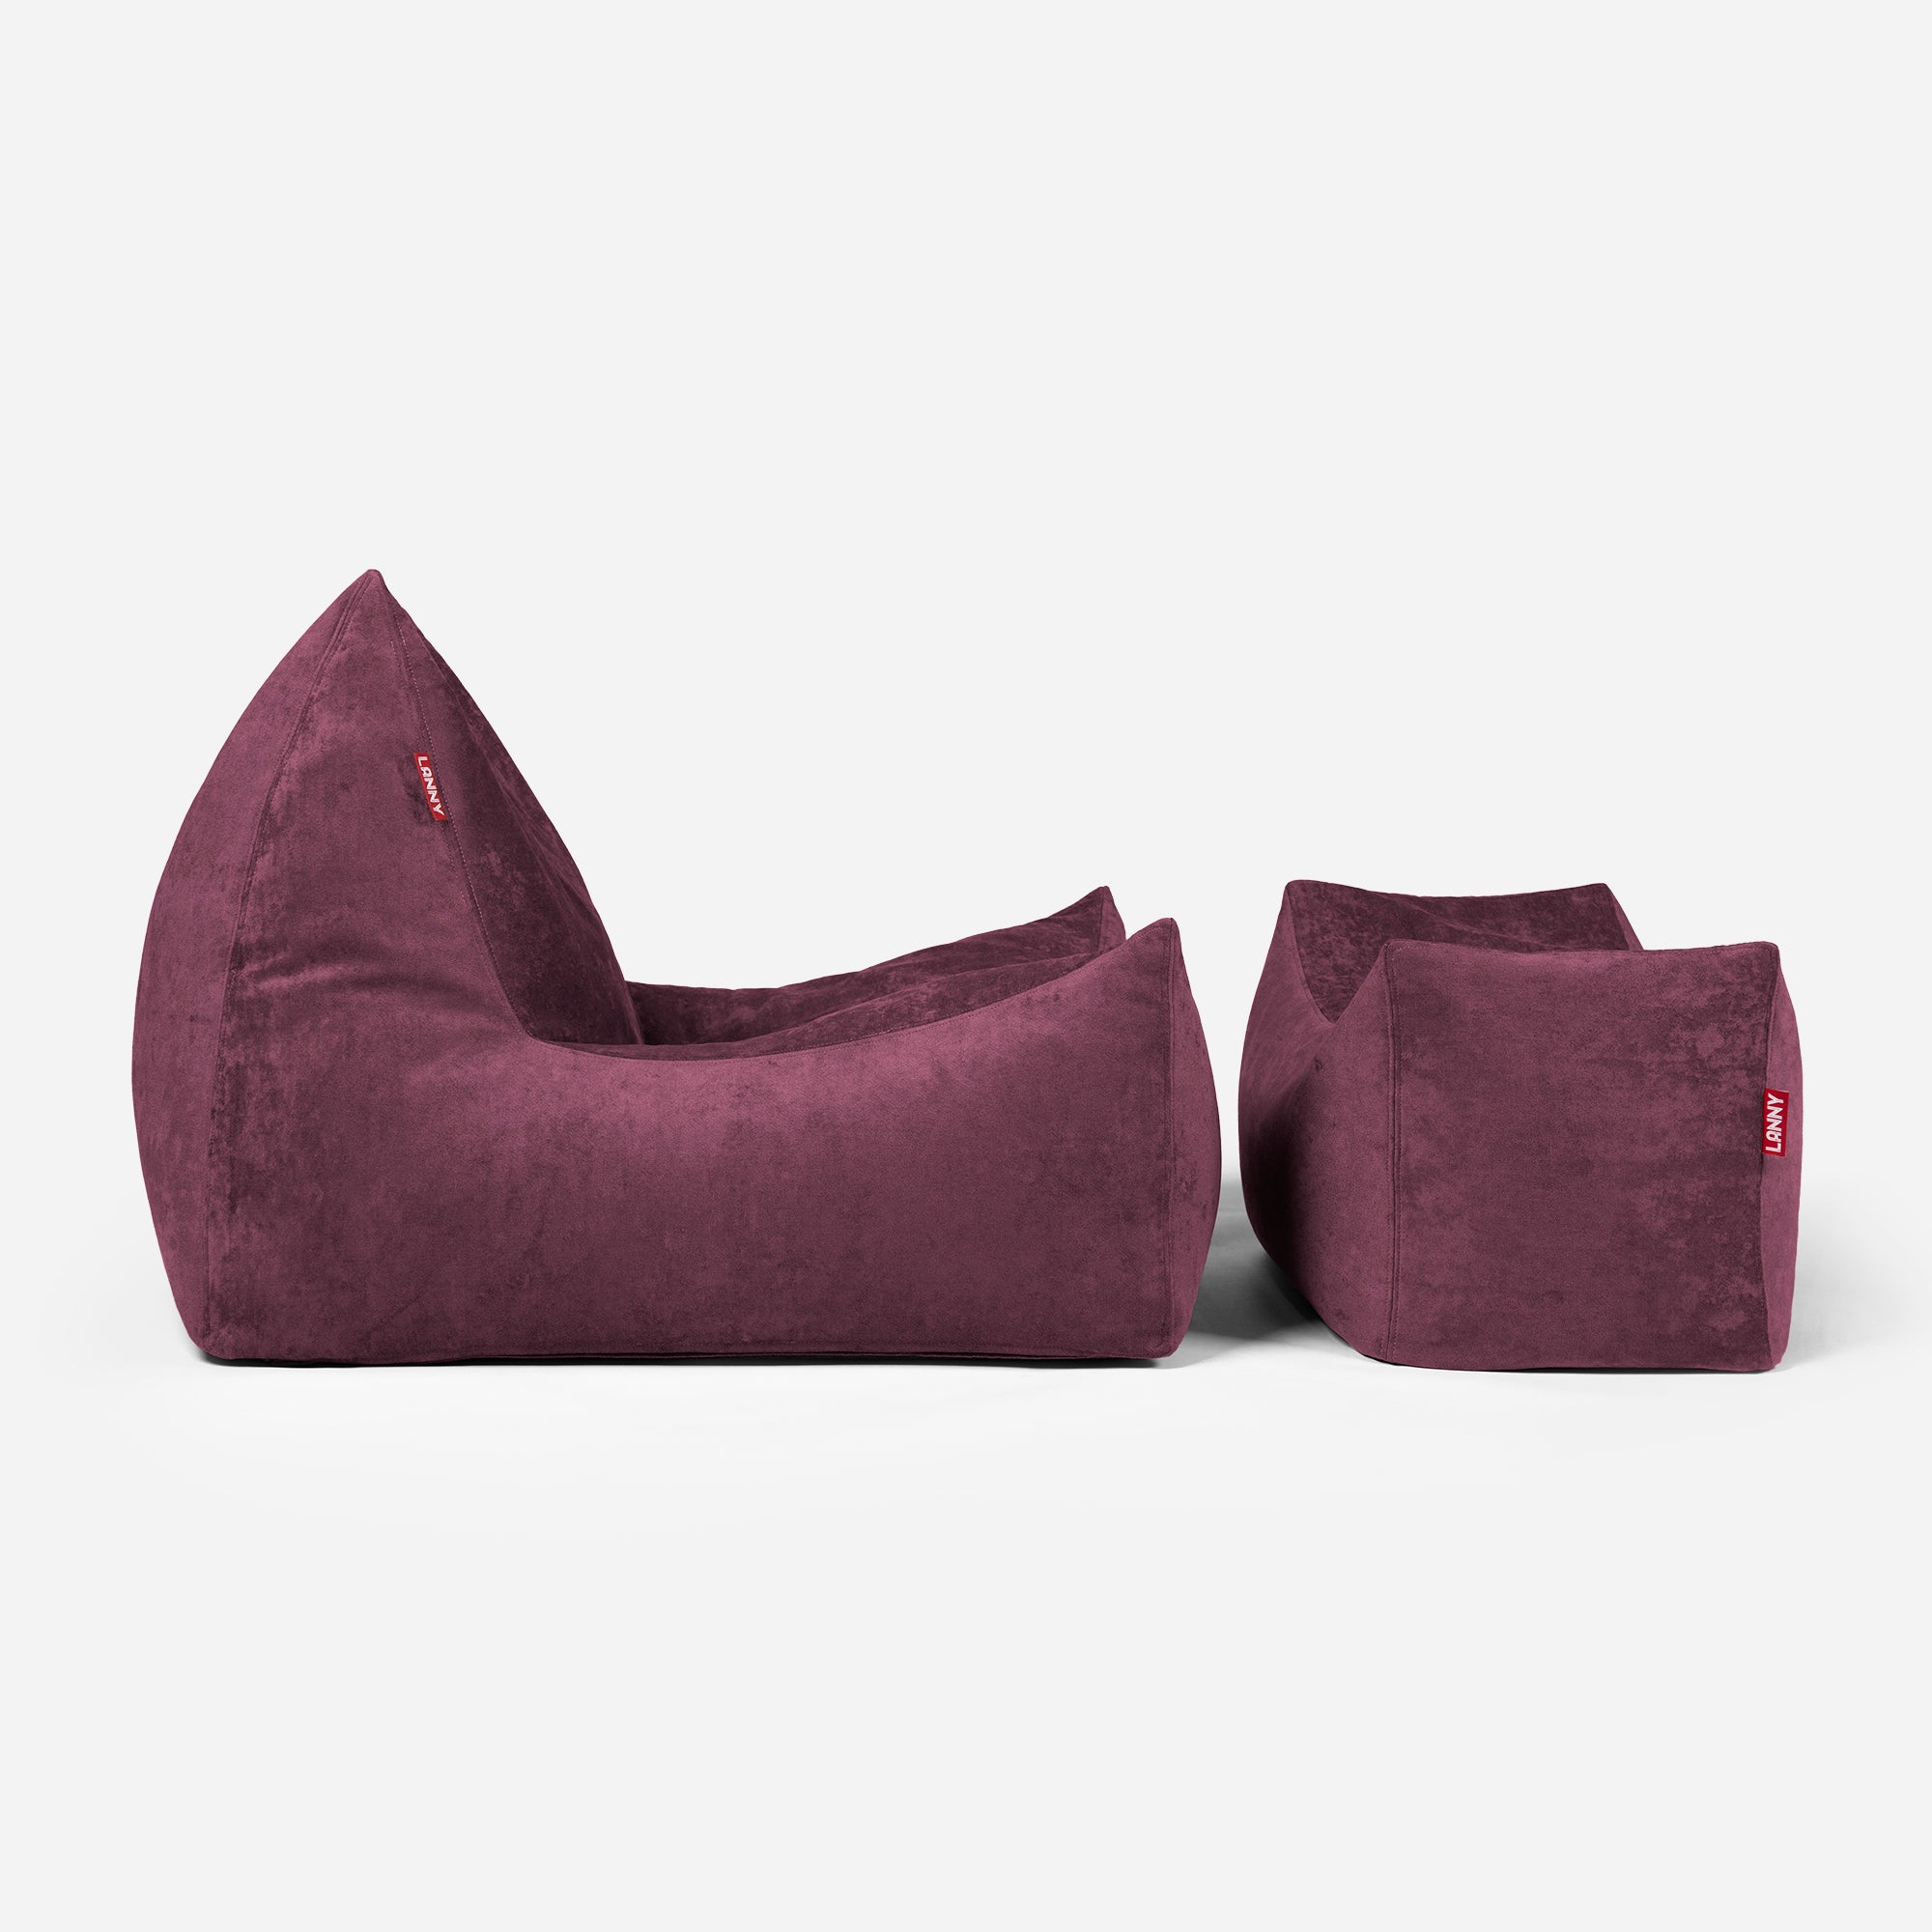 Quadro Aldo Purple Bean bag Chair